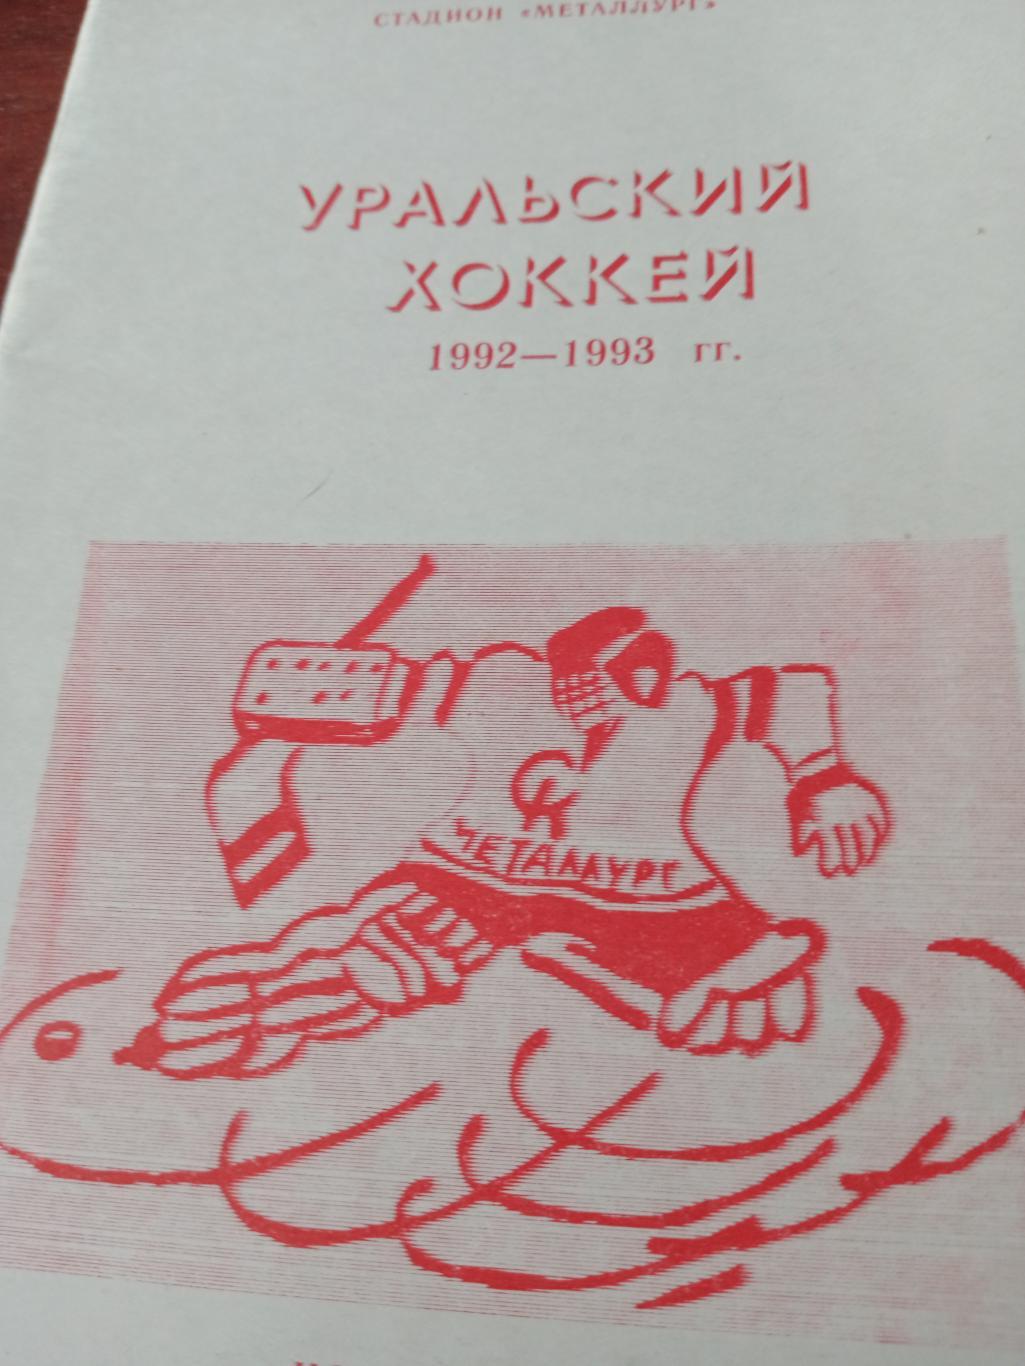 Уральский хоккей - 1992/93